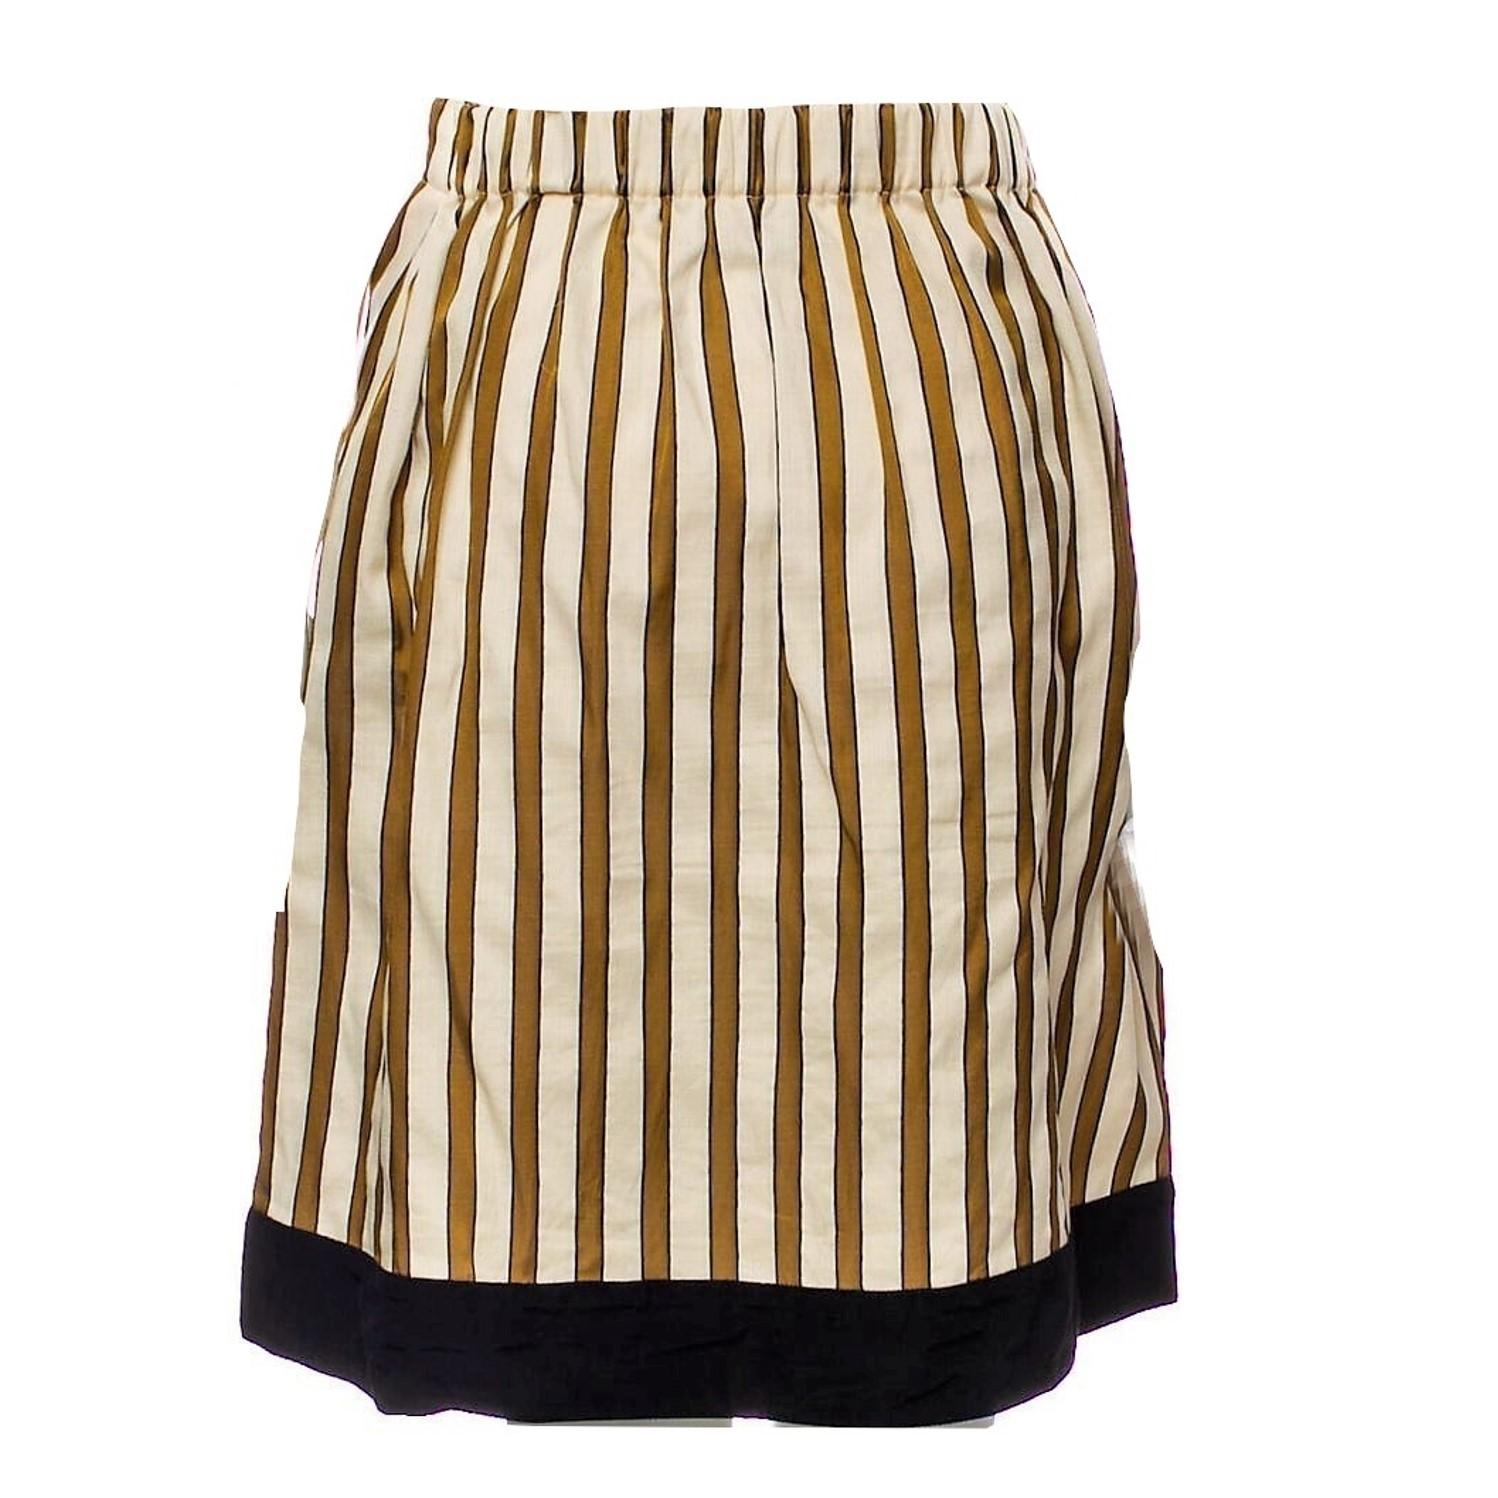 New Rare Fendi Karl Lagerfeld Runway Skirt S/S 2012  $1210 3